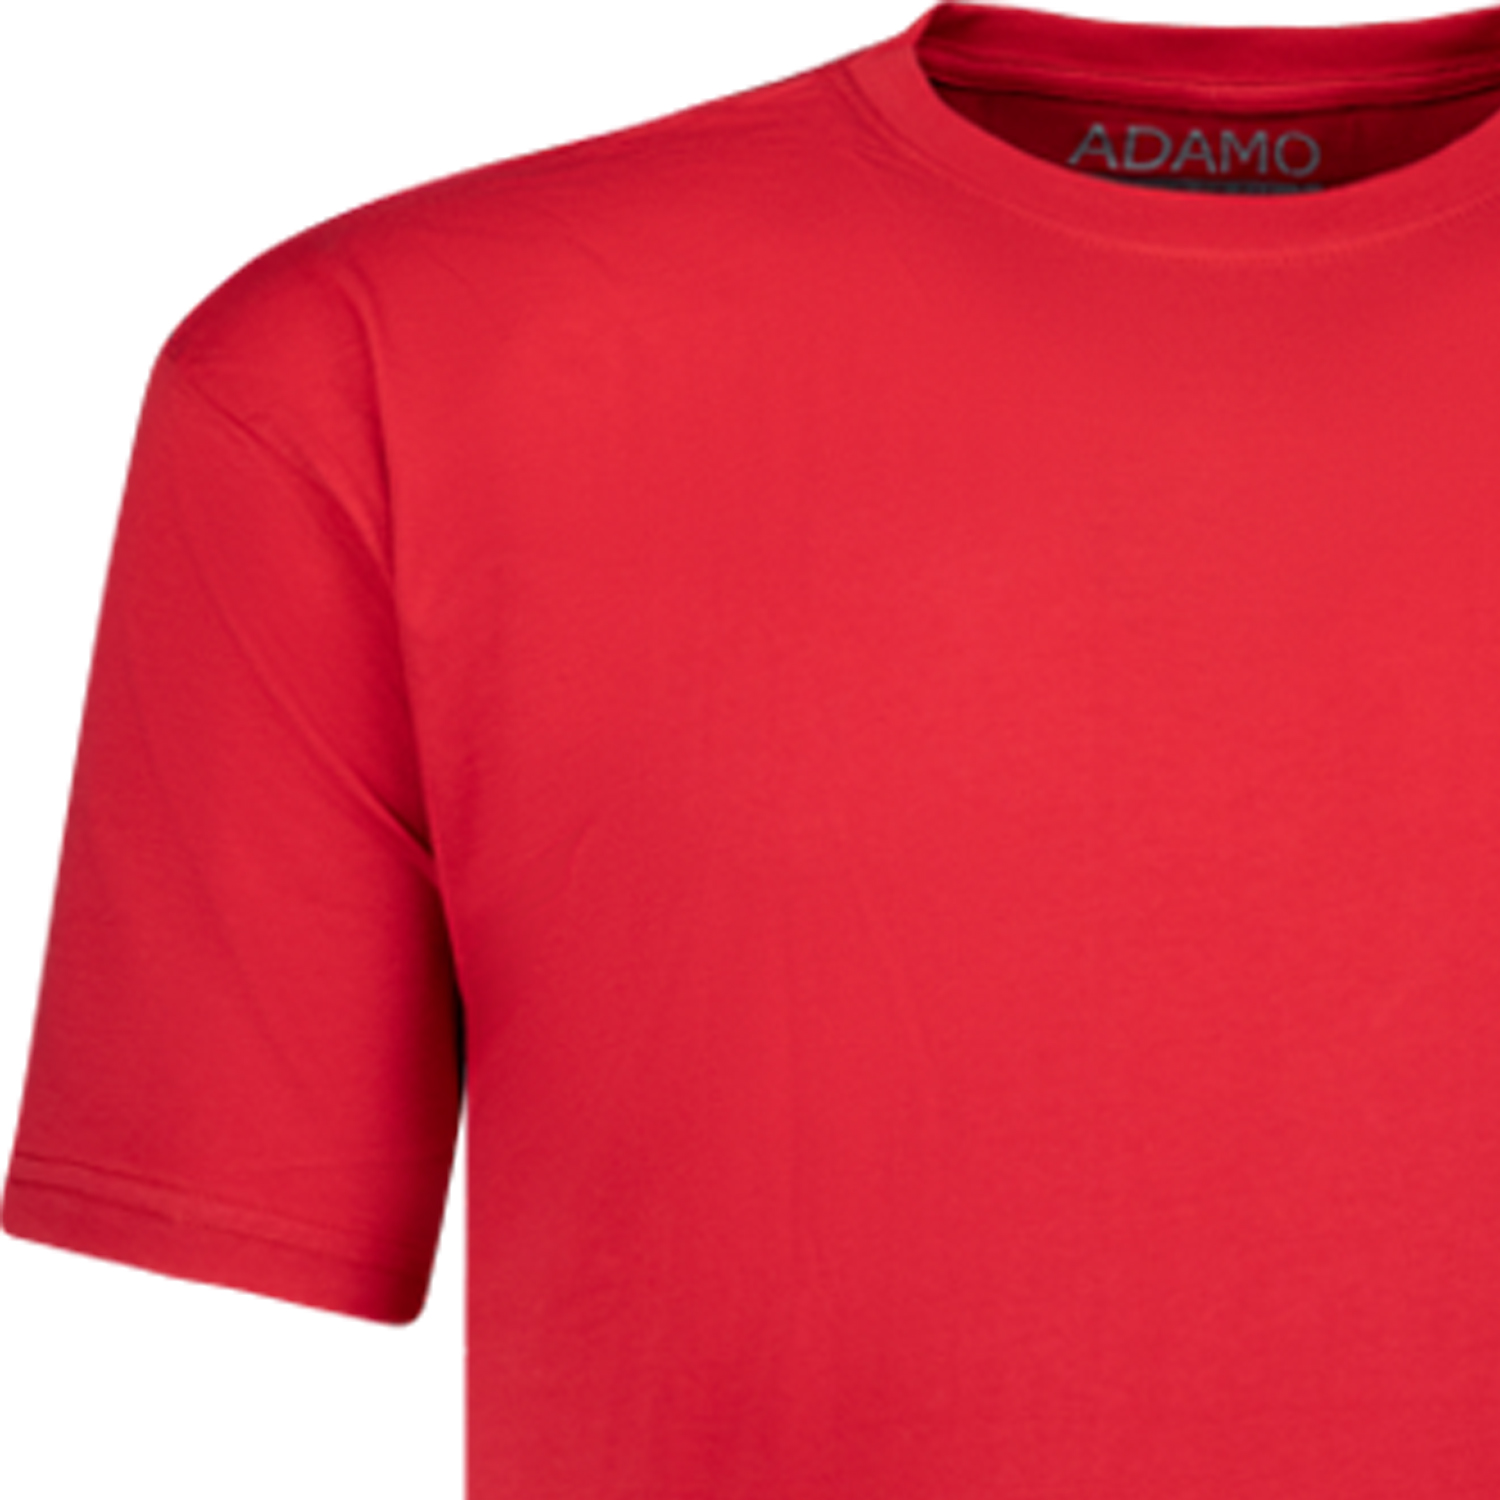 Rotes Herren Übergrößen Shirt 2XL-10XL von ADAMO Modell Kody mit Brusttasche